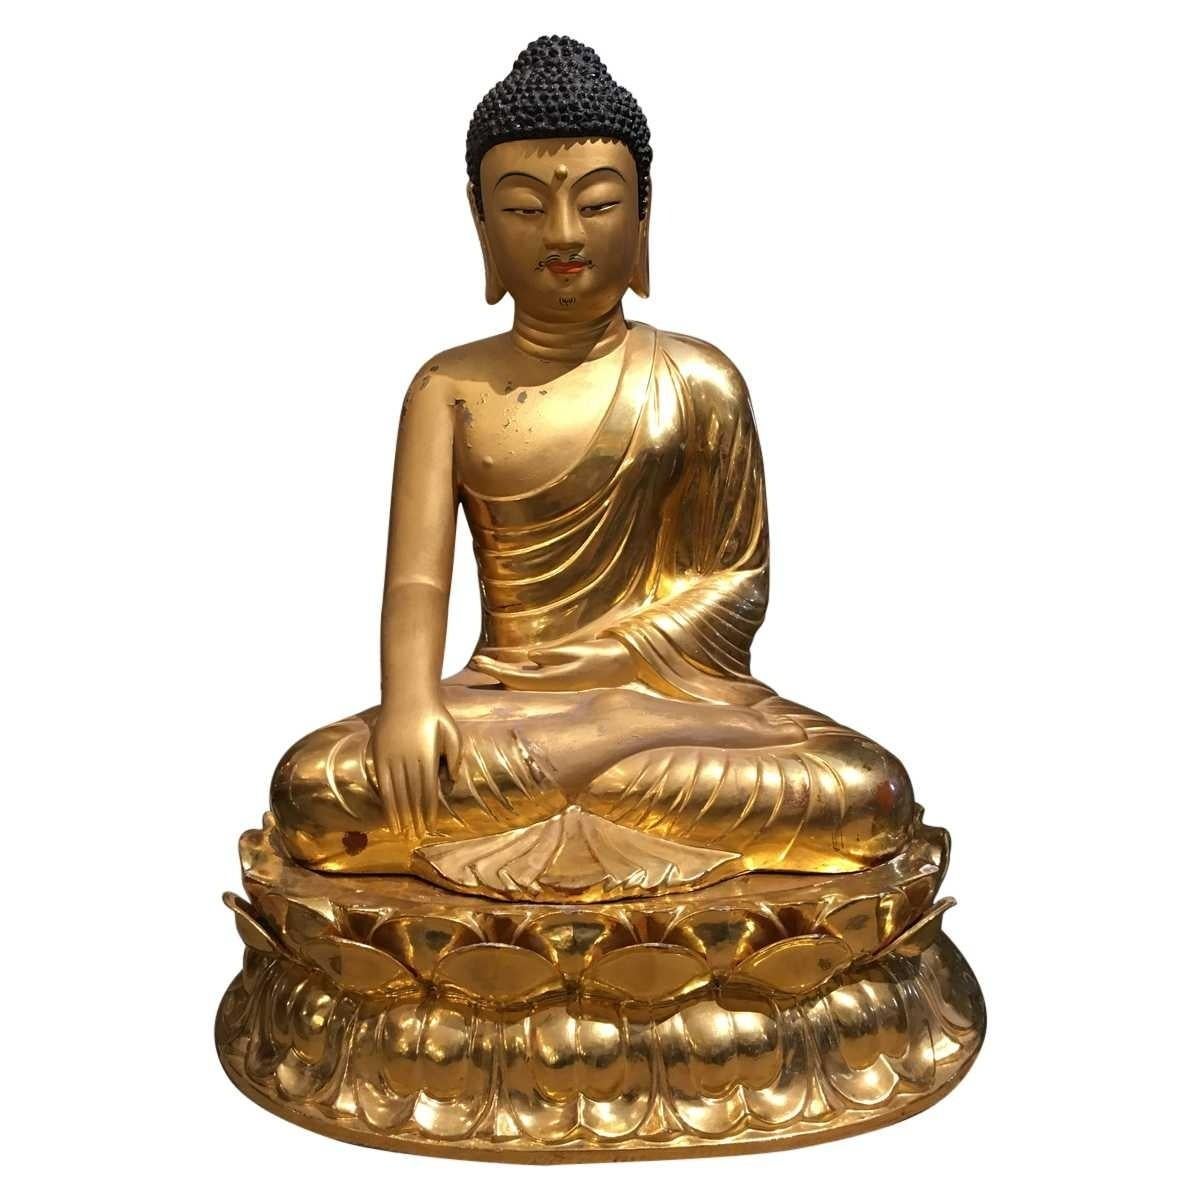 Modern Midcentury Bronze Chinese Seated Buddha Statue